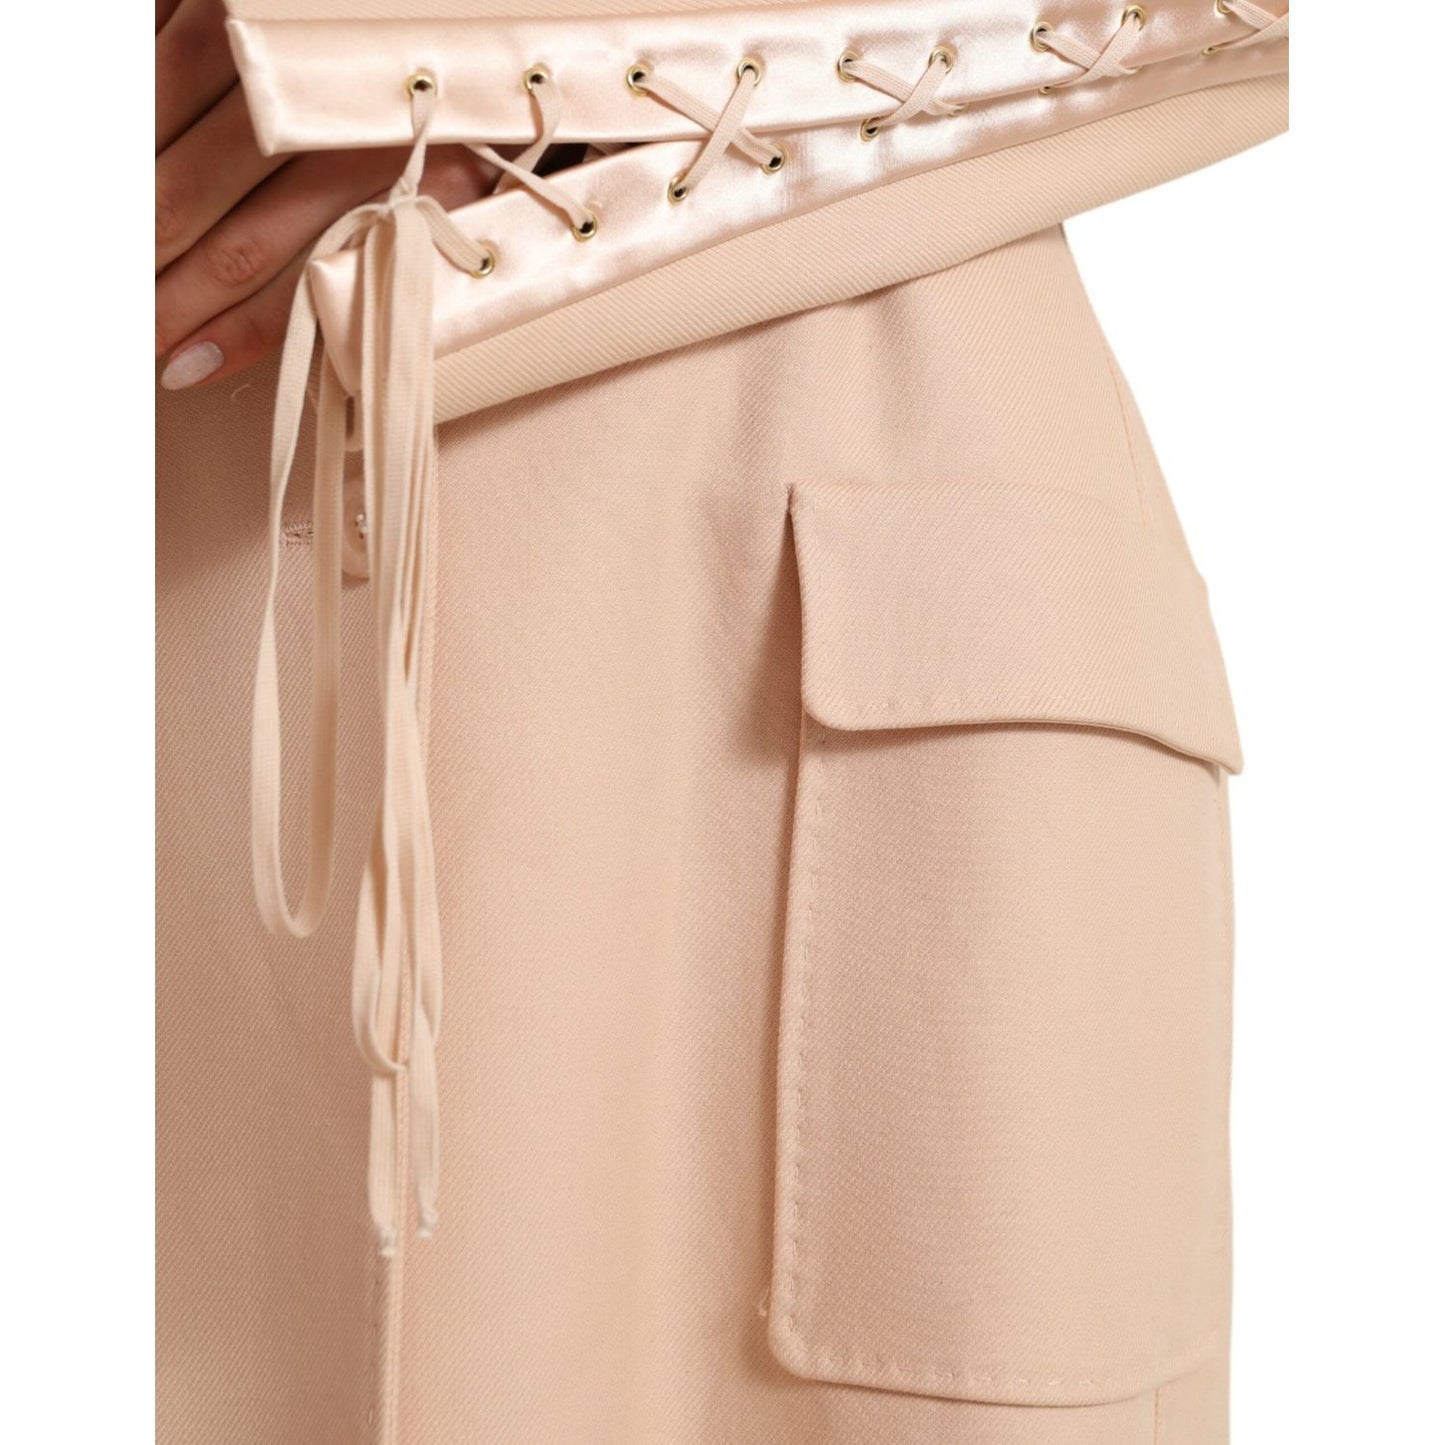 Dolce & Gabbana Elegant Beige Single-Breasted Trench Coat beige-cotton-single-breasted-long-coat-jacket 465A9169-BG-1-scaled-b981f3f9-bfd.jpg